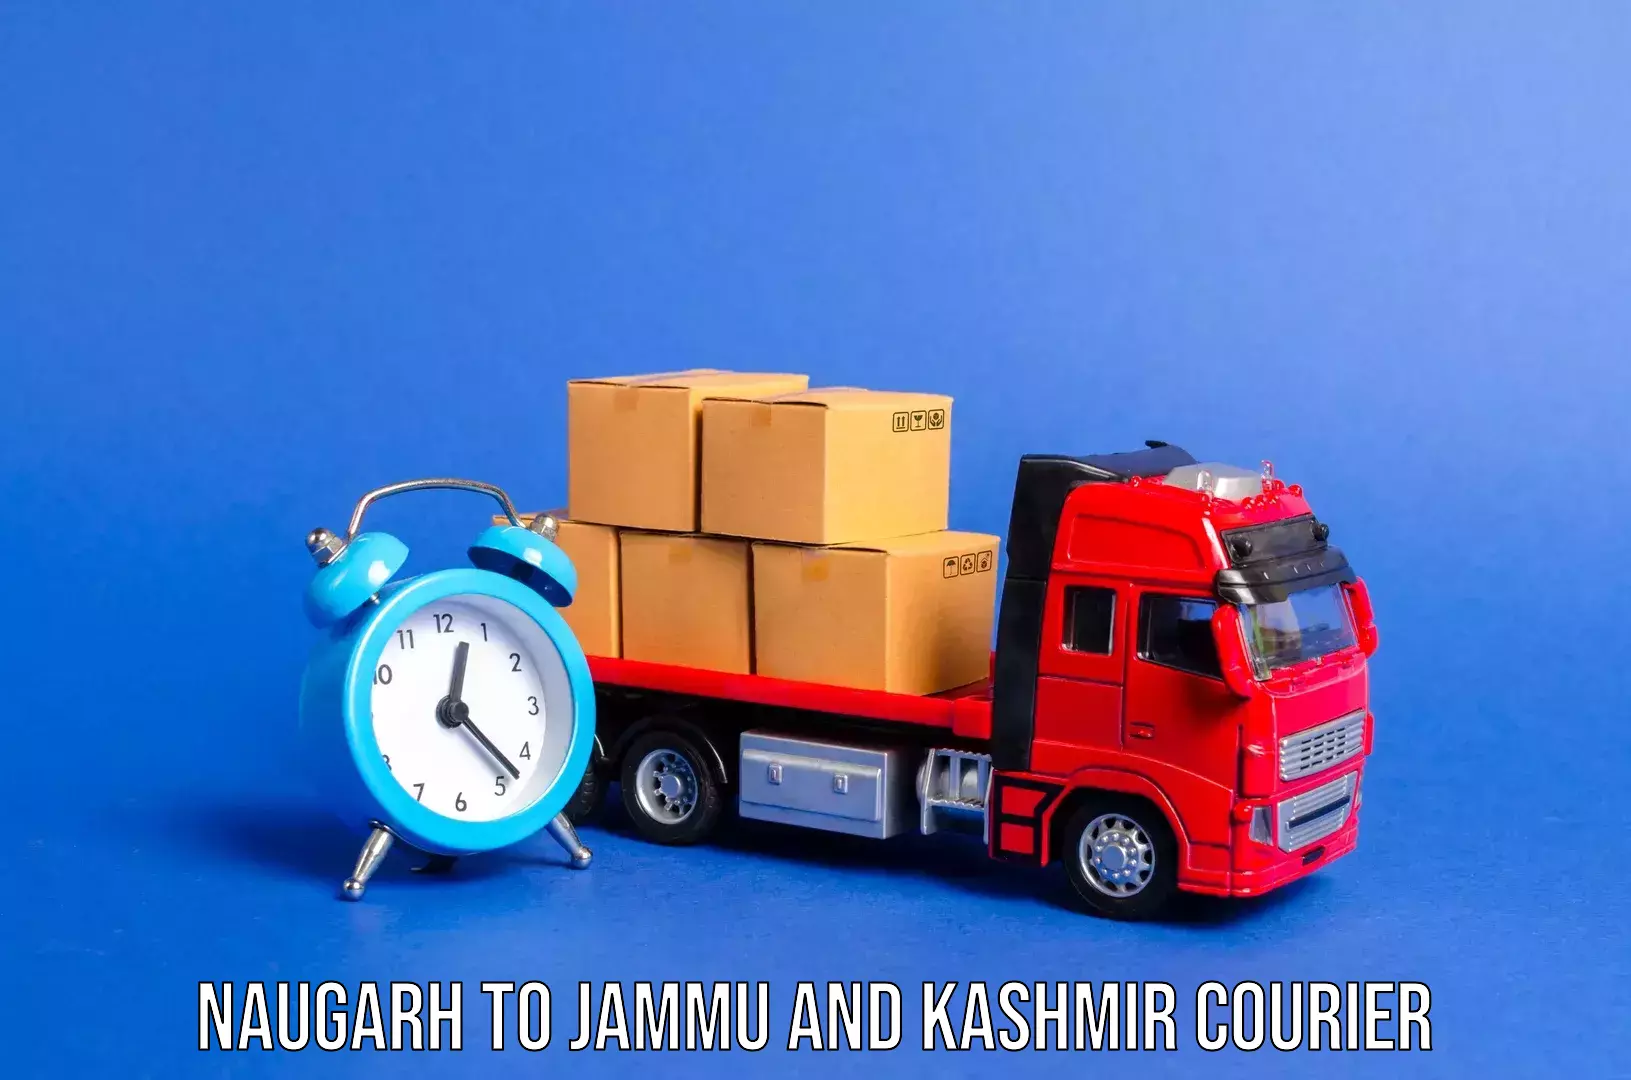 Comprehensive baggage service Naugarh to Jammu and Kashmir